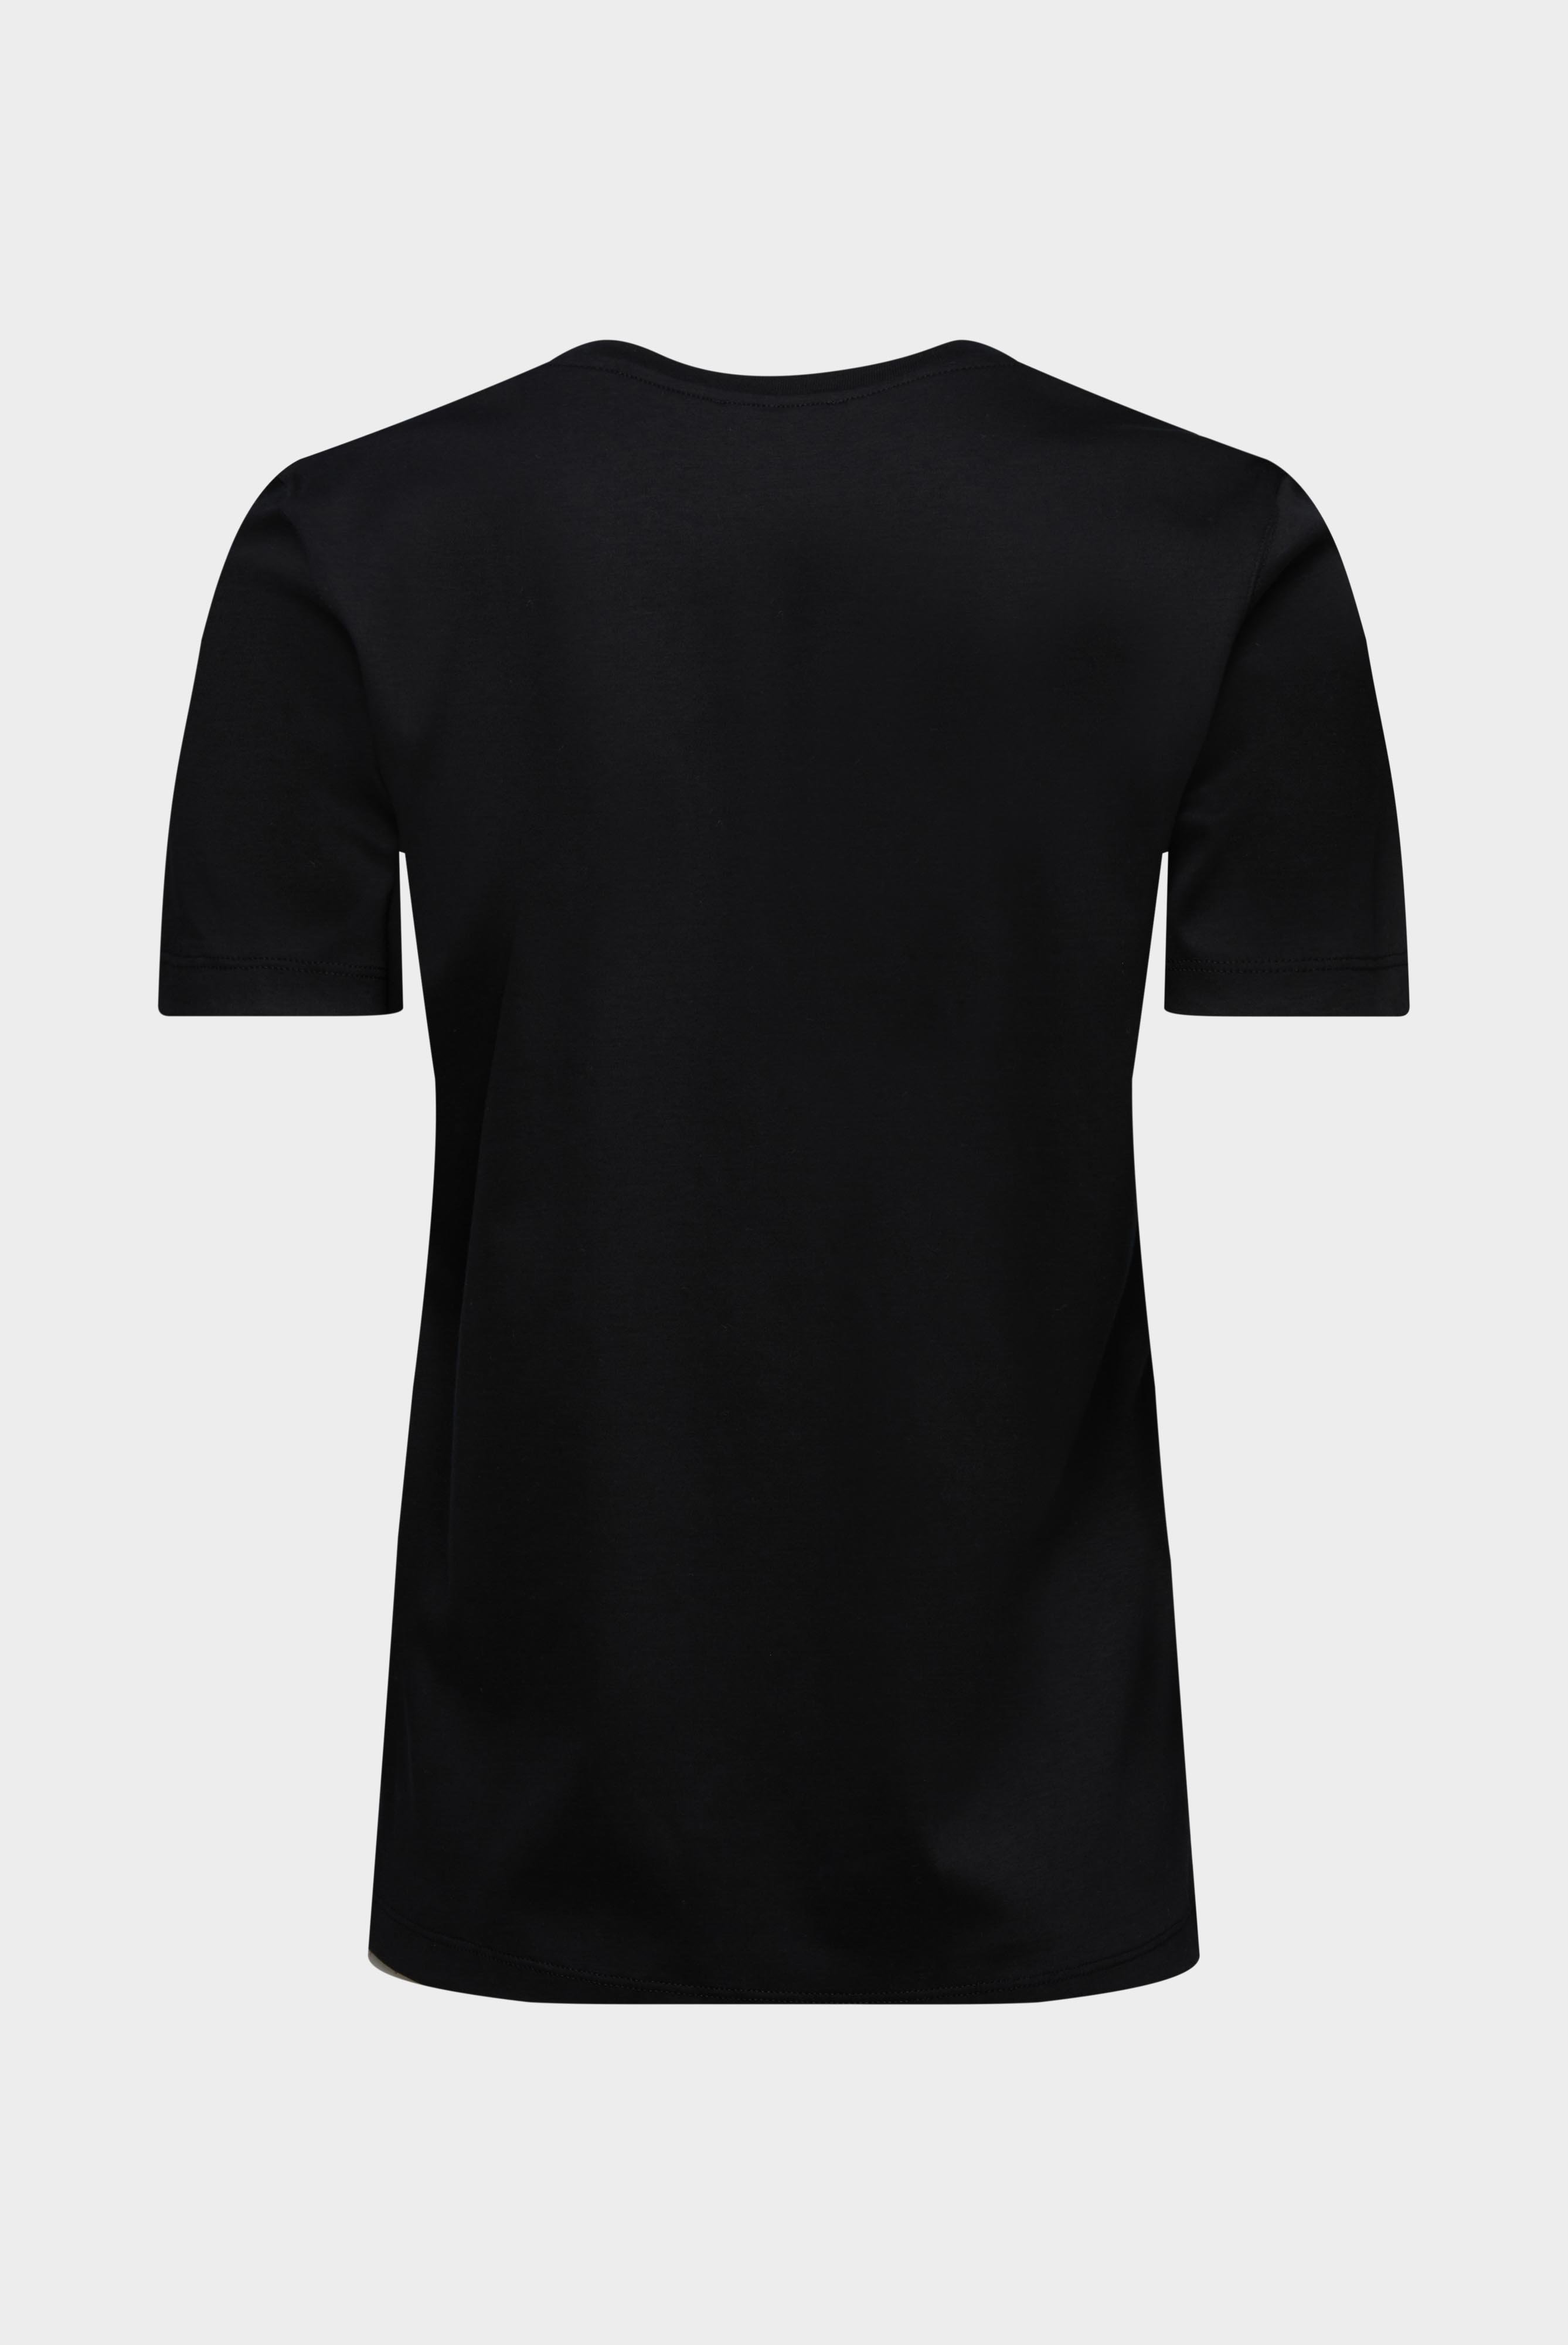 Tops & T-Shirts+Jersey T-Shirt+05.6384.18.180031.099.46